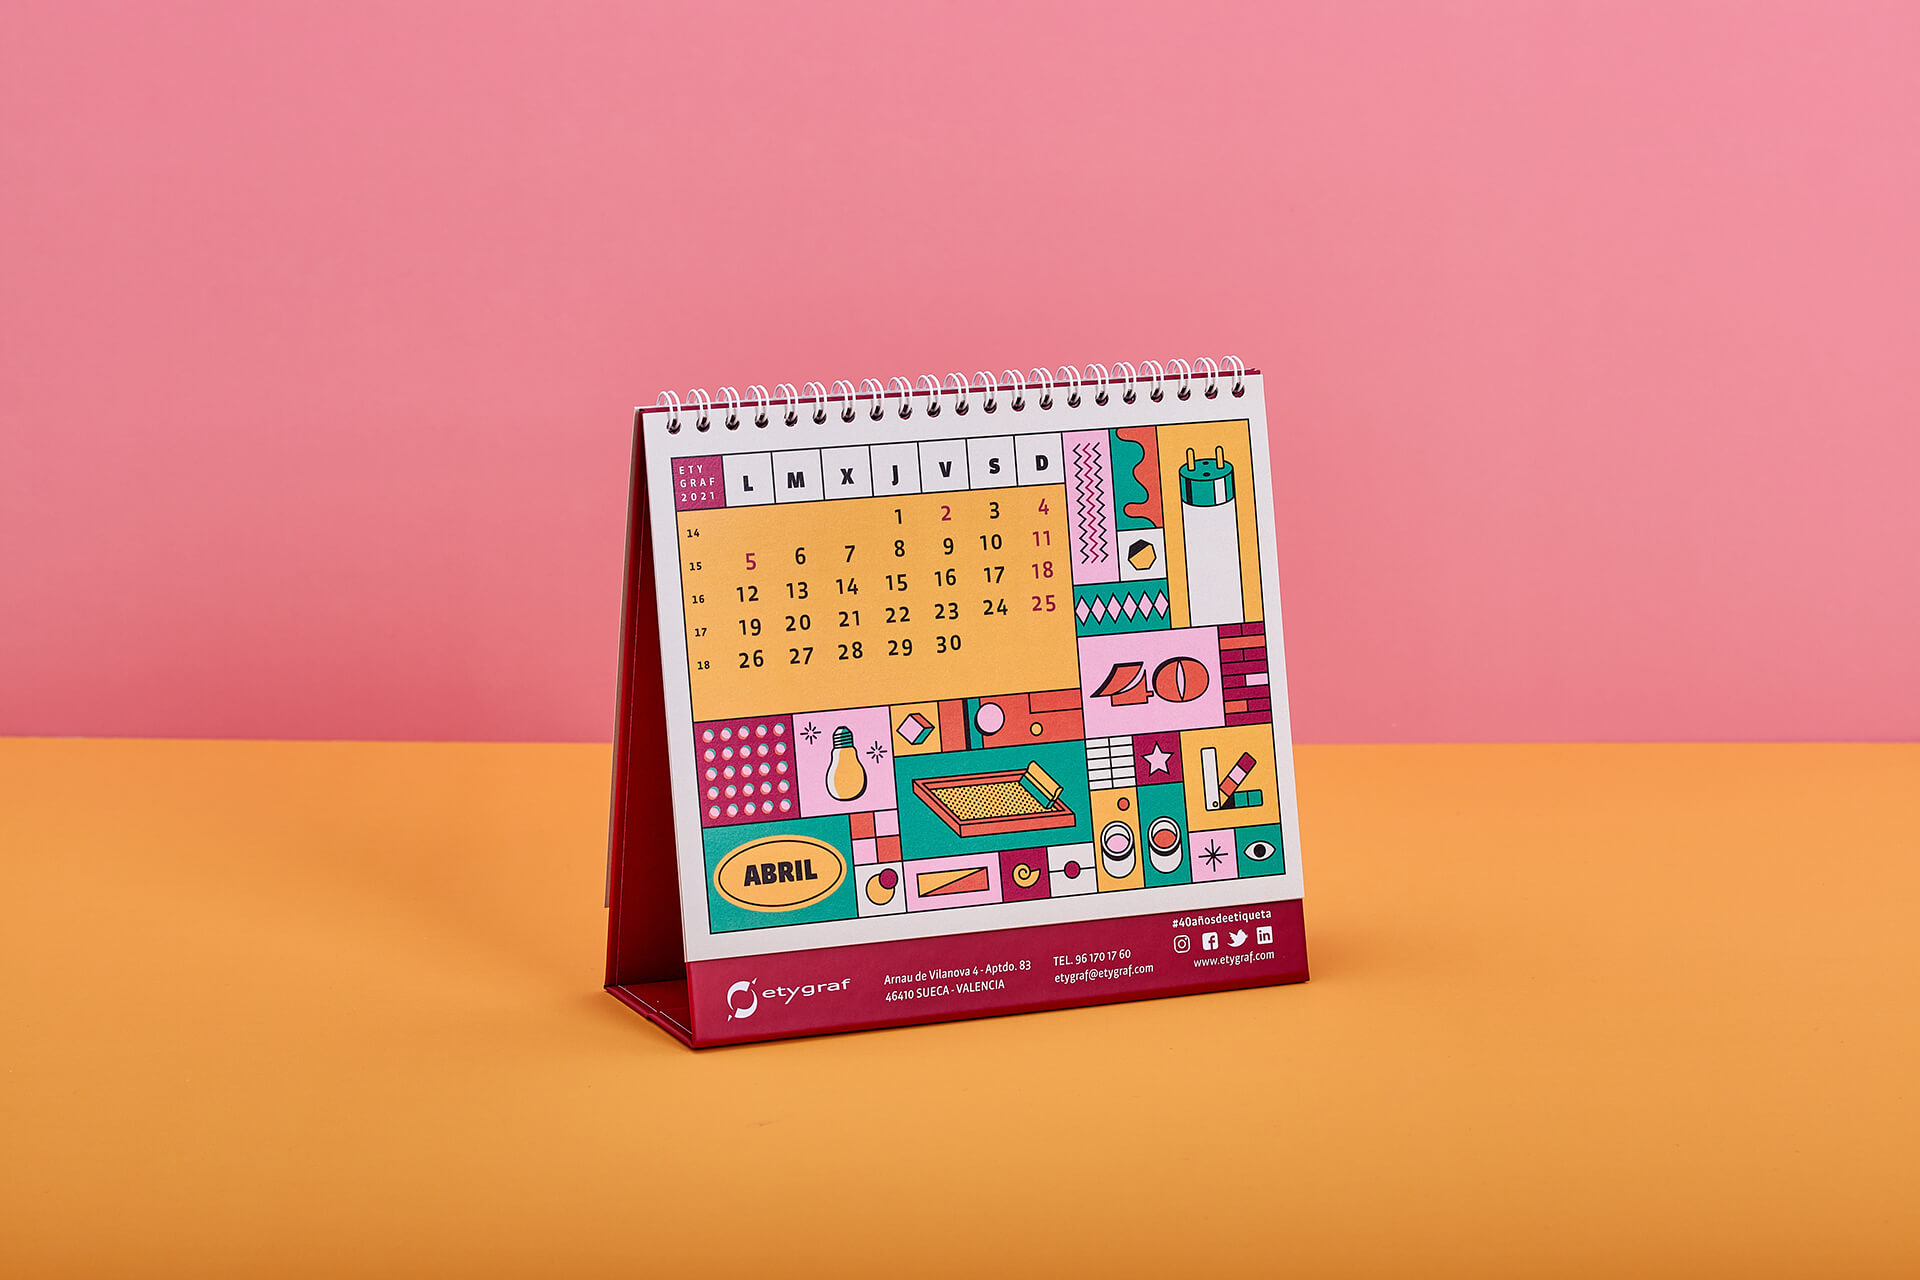 Diseño del calendario Etygraf 40 aniversario